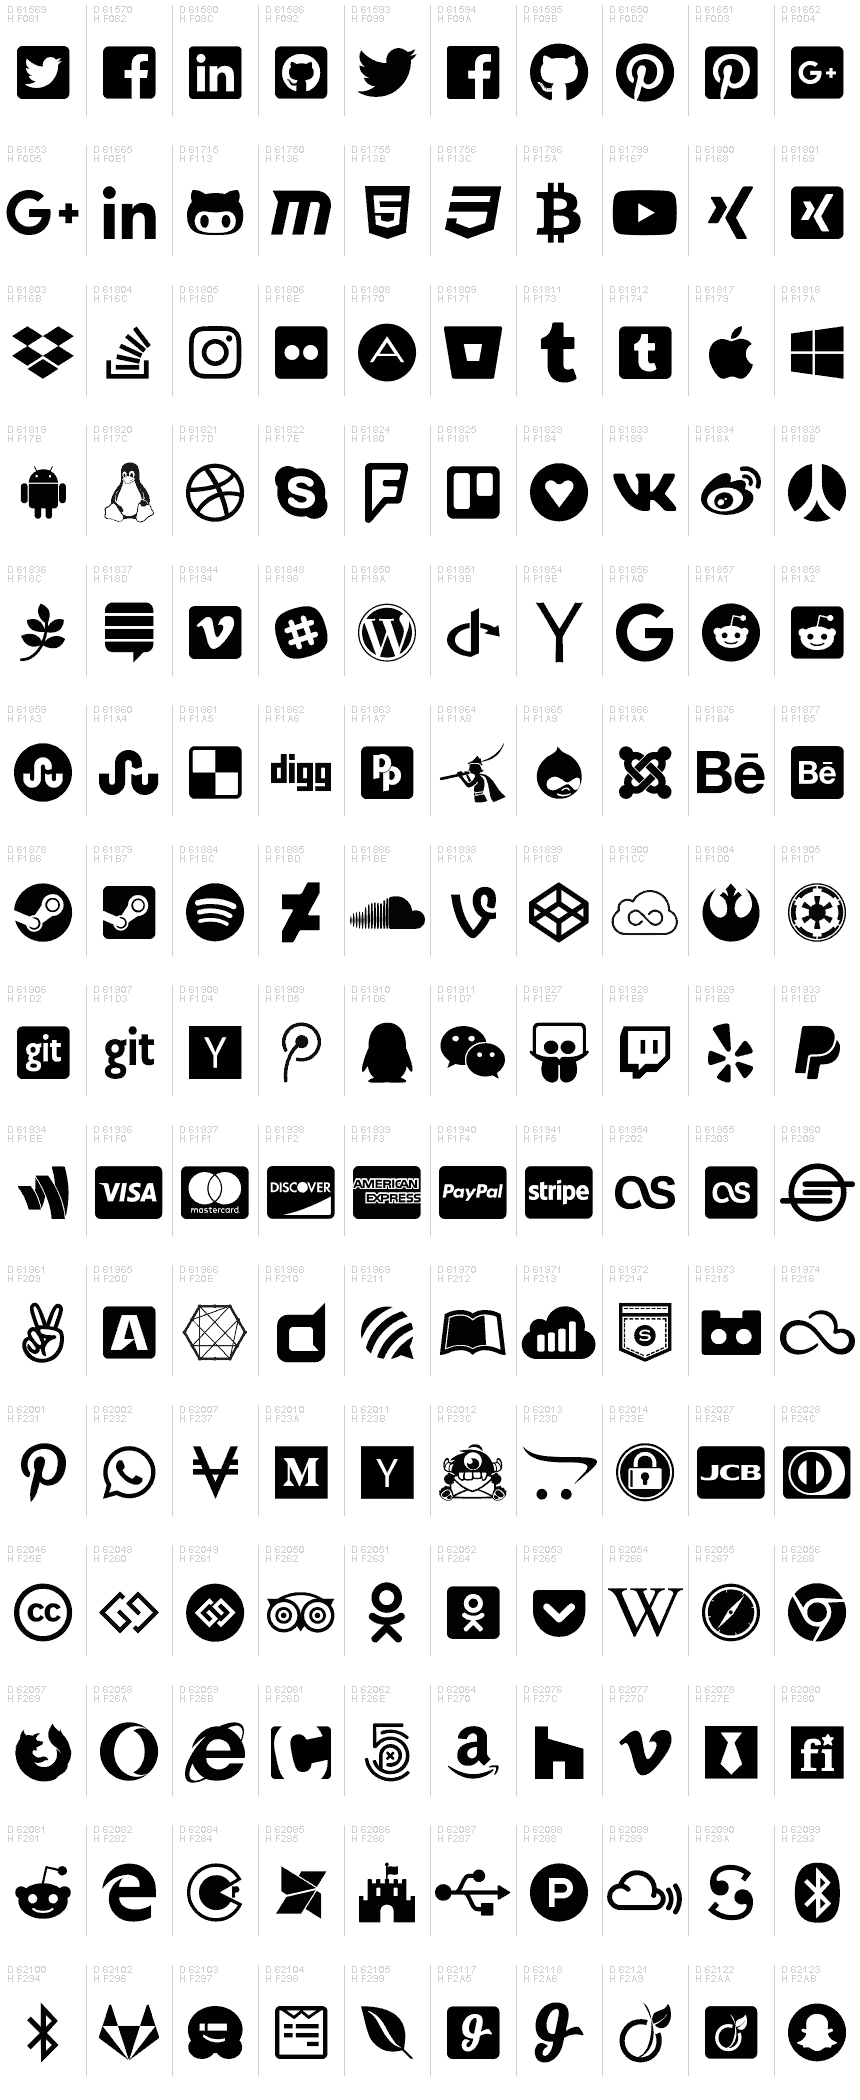 Font Awesome 5 Brands Regular tải miễn phí: Thêm nhiều sự sáng tạo vào các bản thiết kế của bạn với Font Awesome 5 Brands Regular - một bộ sưu tập hình ảnh thương hiệu được tải miễn phí. Tải về ngay hôm nay và trải nghiệm sự khác biệt.